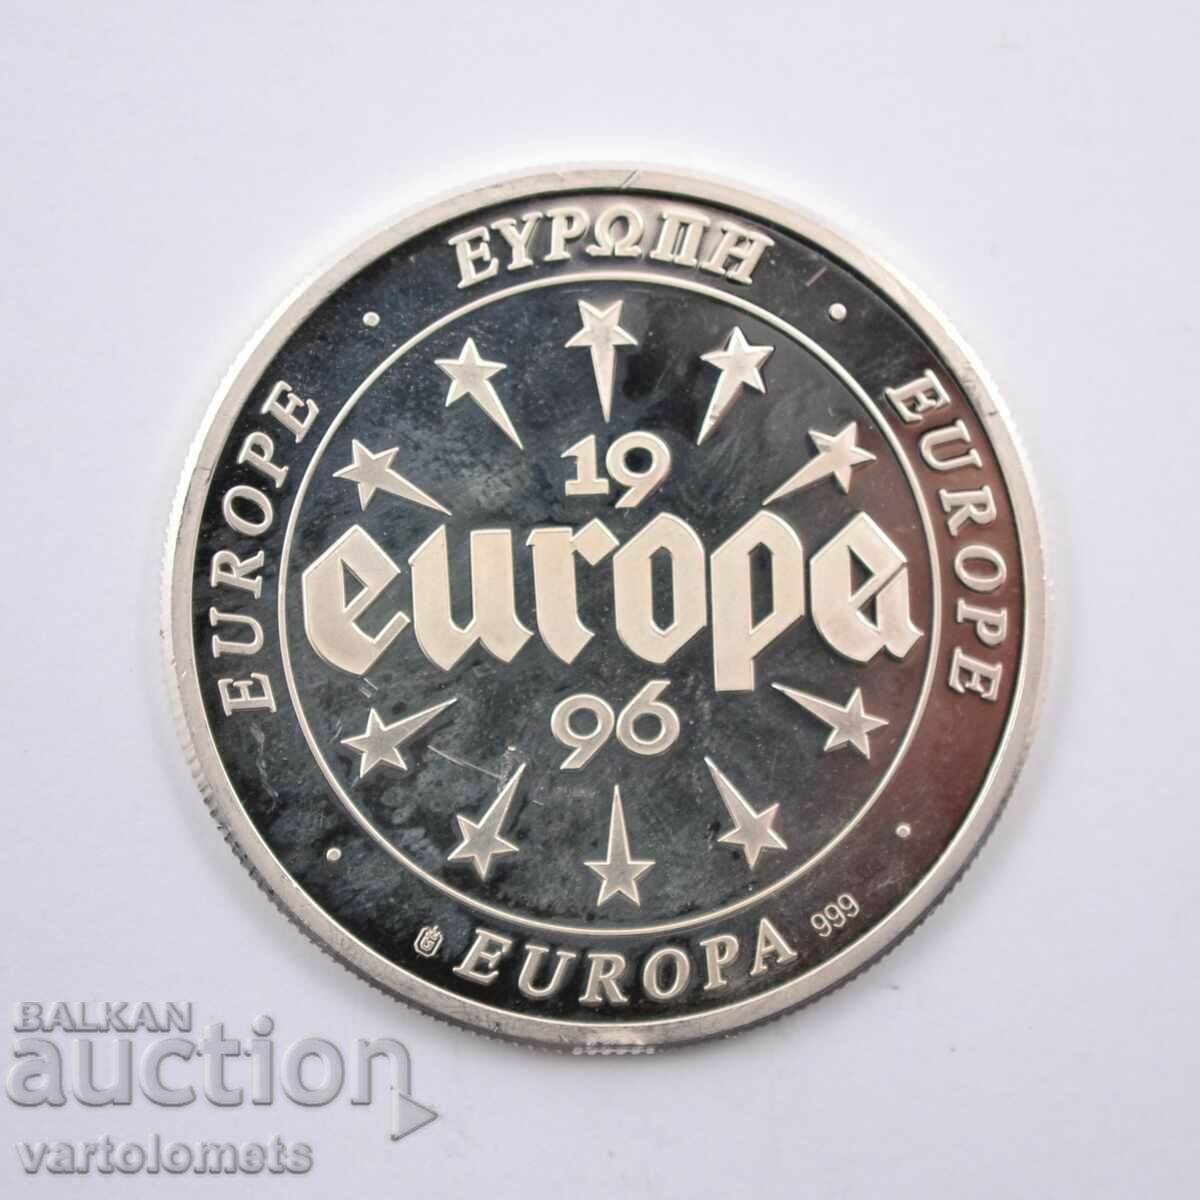 Сребро 10 евро Ирландия 1996 г 19,9 гр. 999 пр.